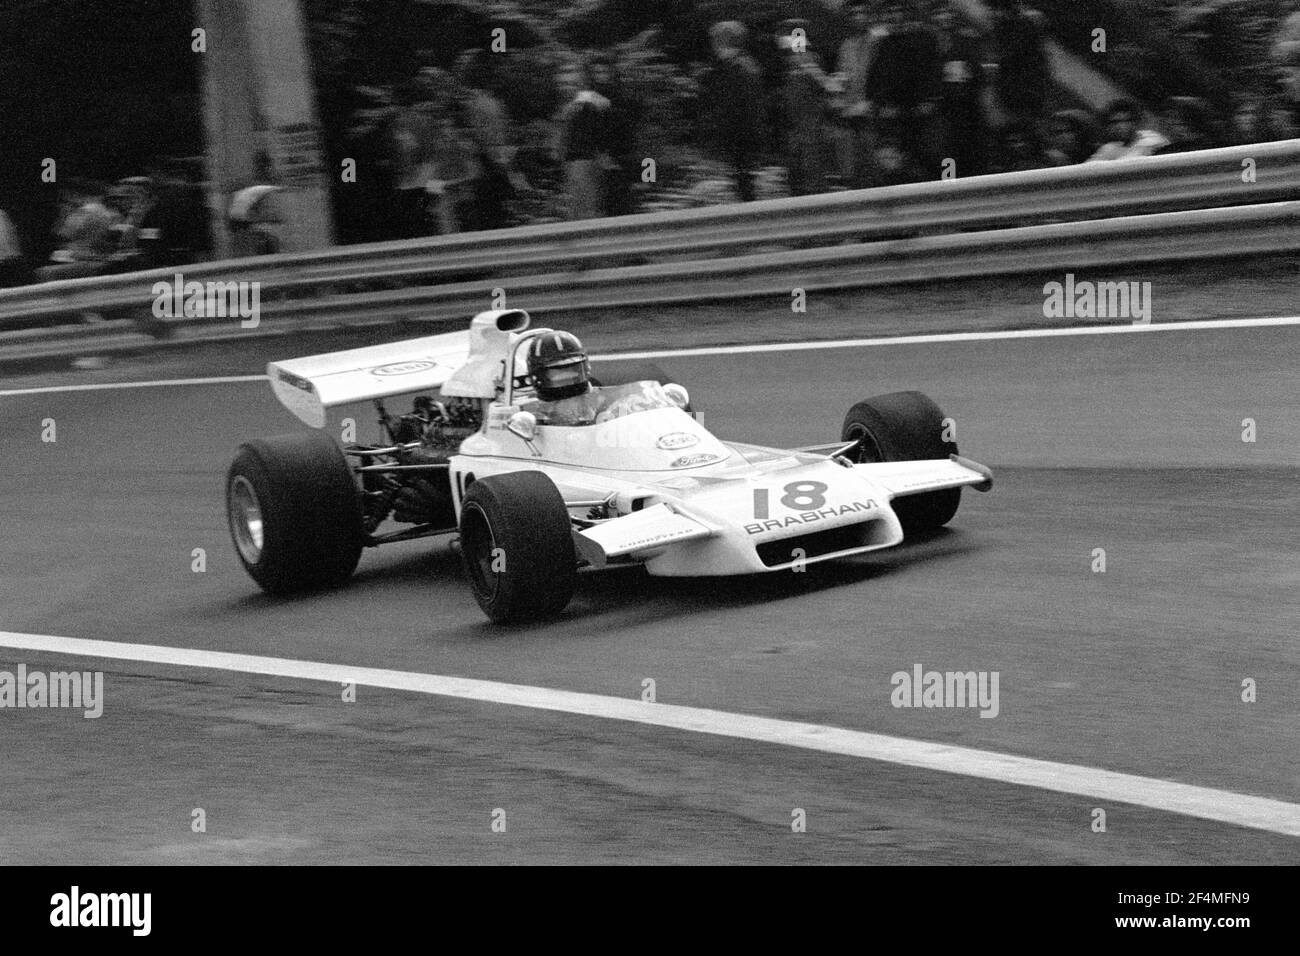 Graham HILL guida BRM F1 a piena velocità durante il Gran Premio di Francia 1972, nel circuito di Charade vicino a Clermont-Ferrand. Foto Stock